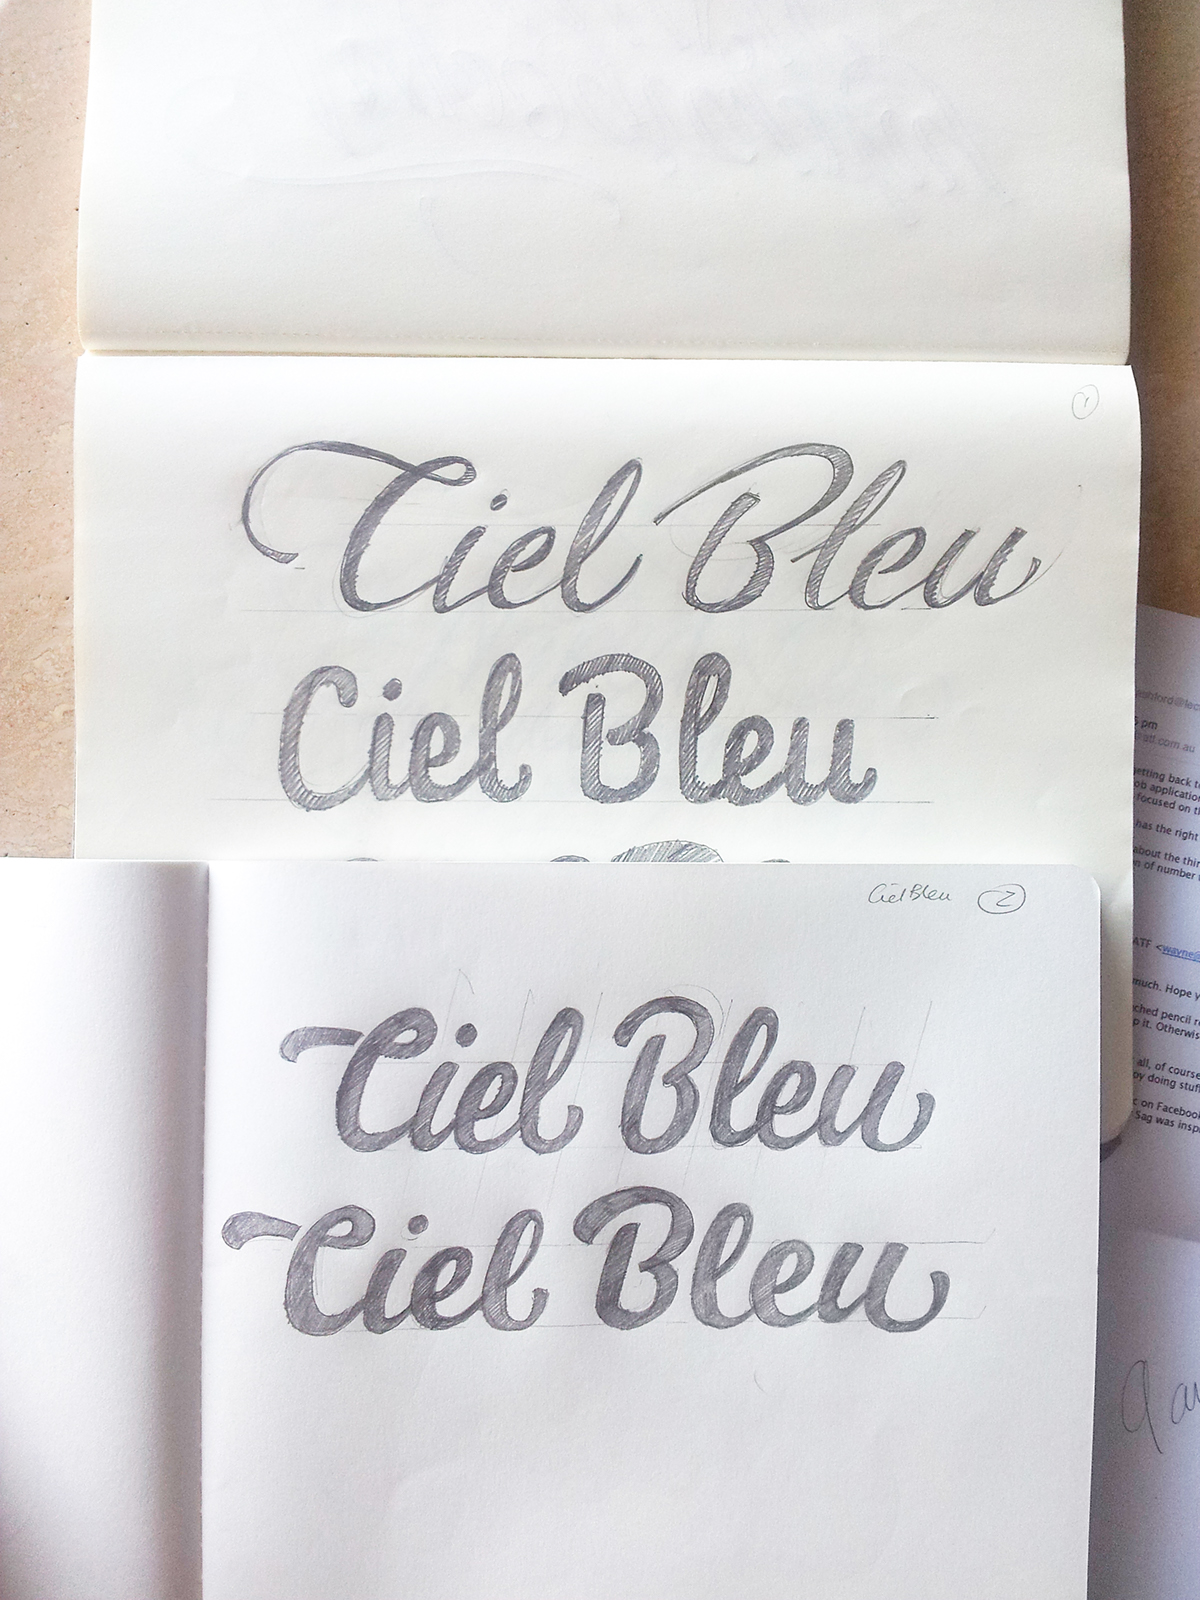 ciel bleu house nameplate type design Custom Lettering